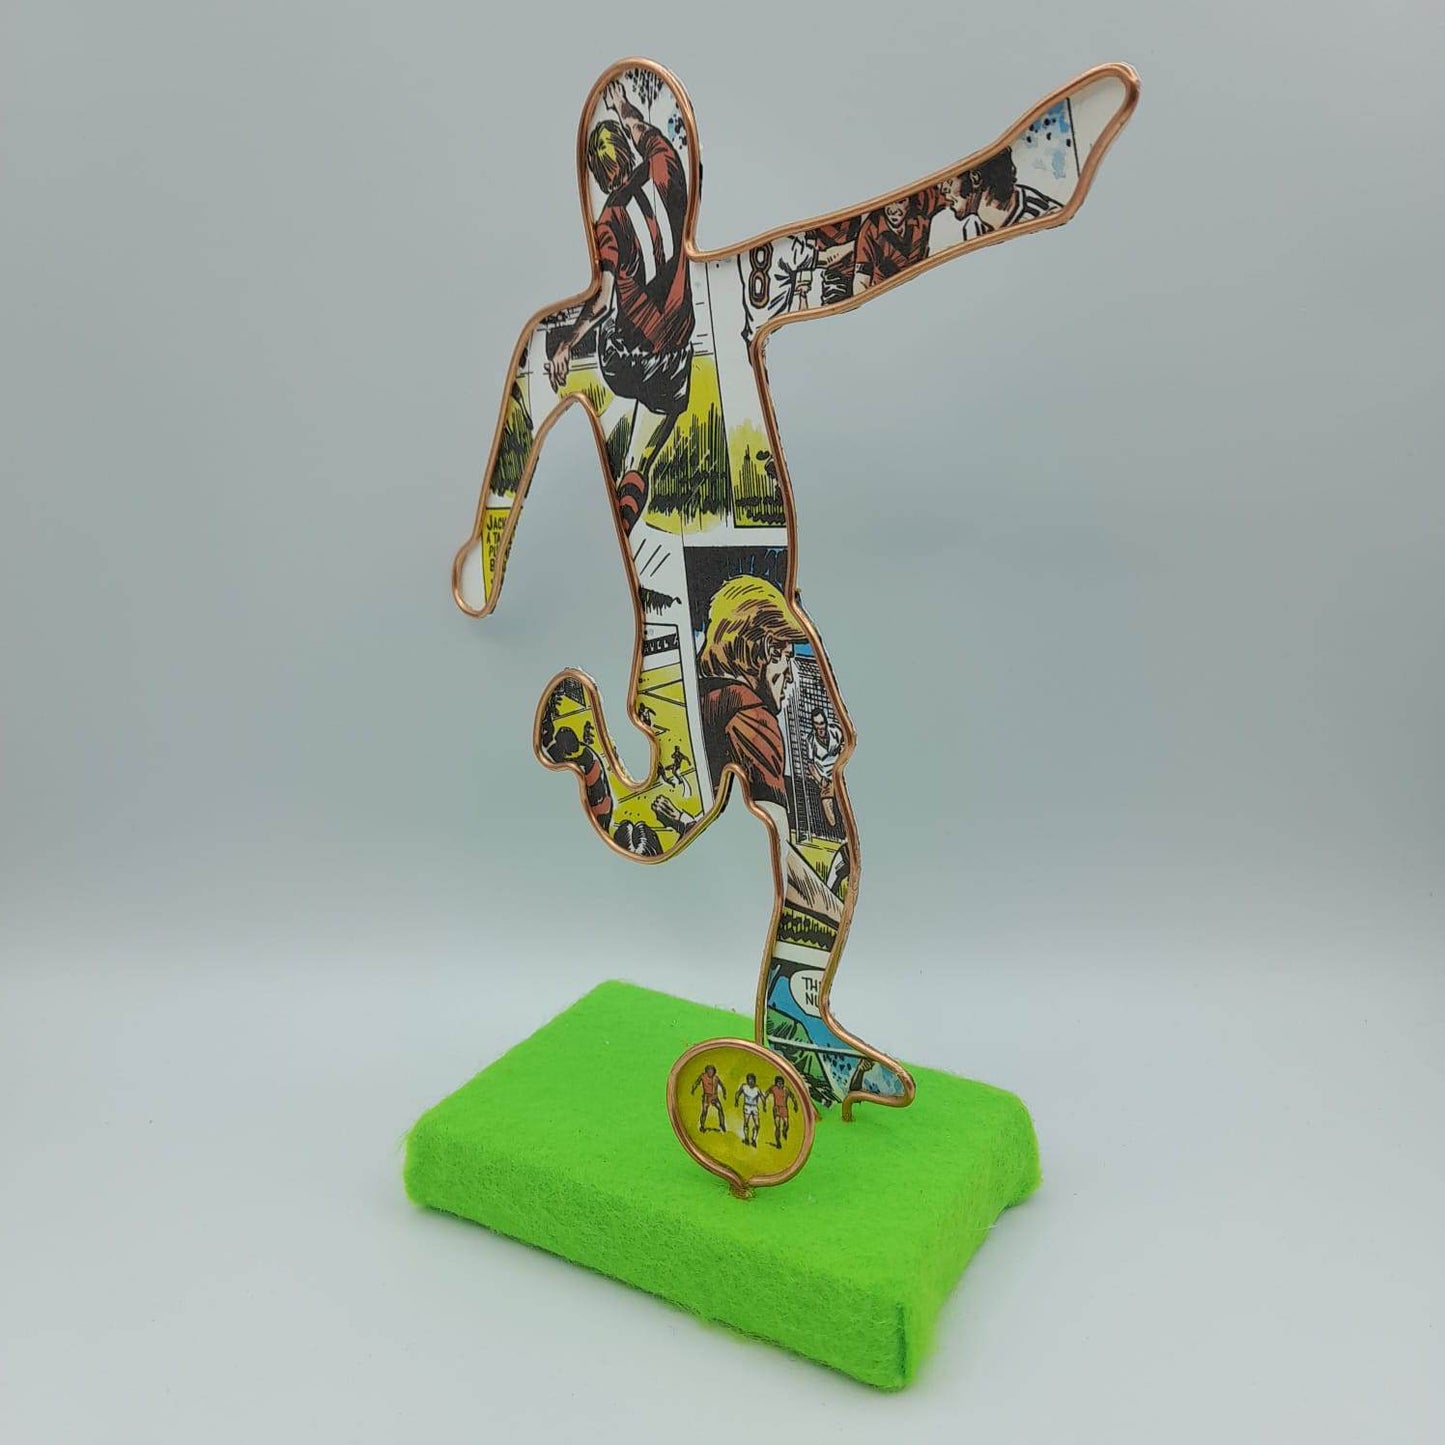 Handmade Wire sculptures of a Footballer